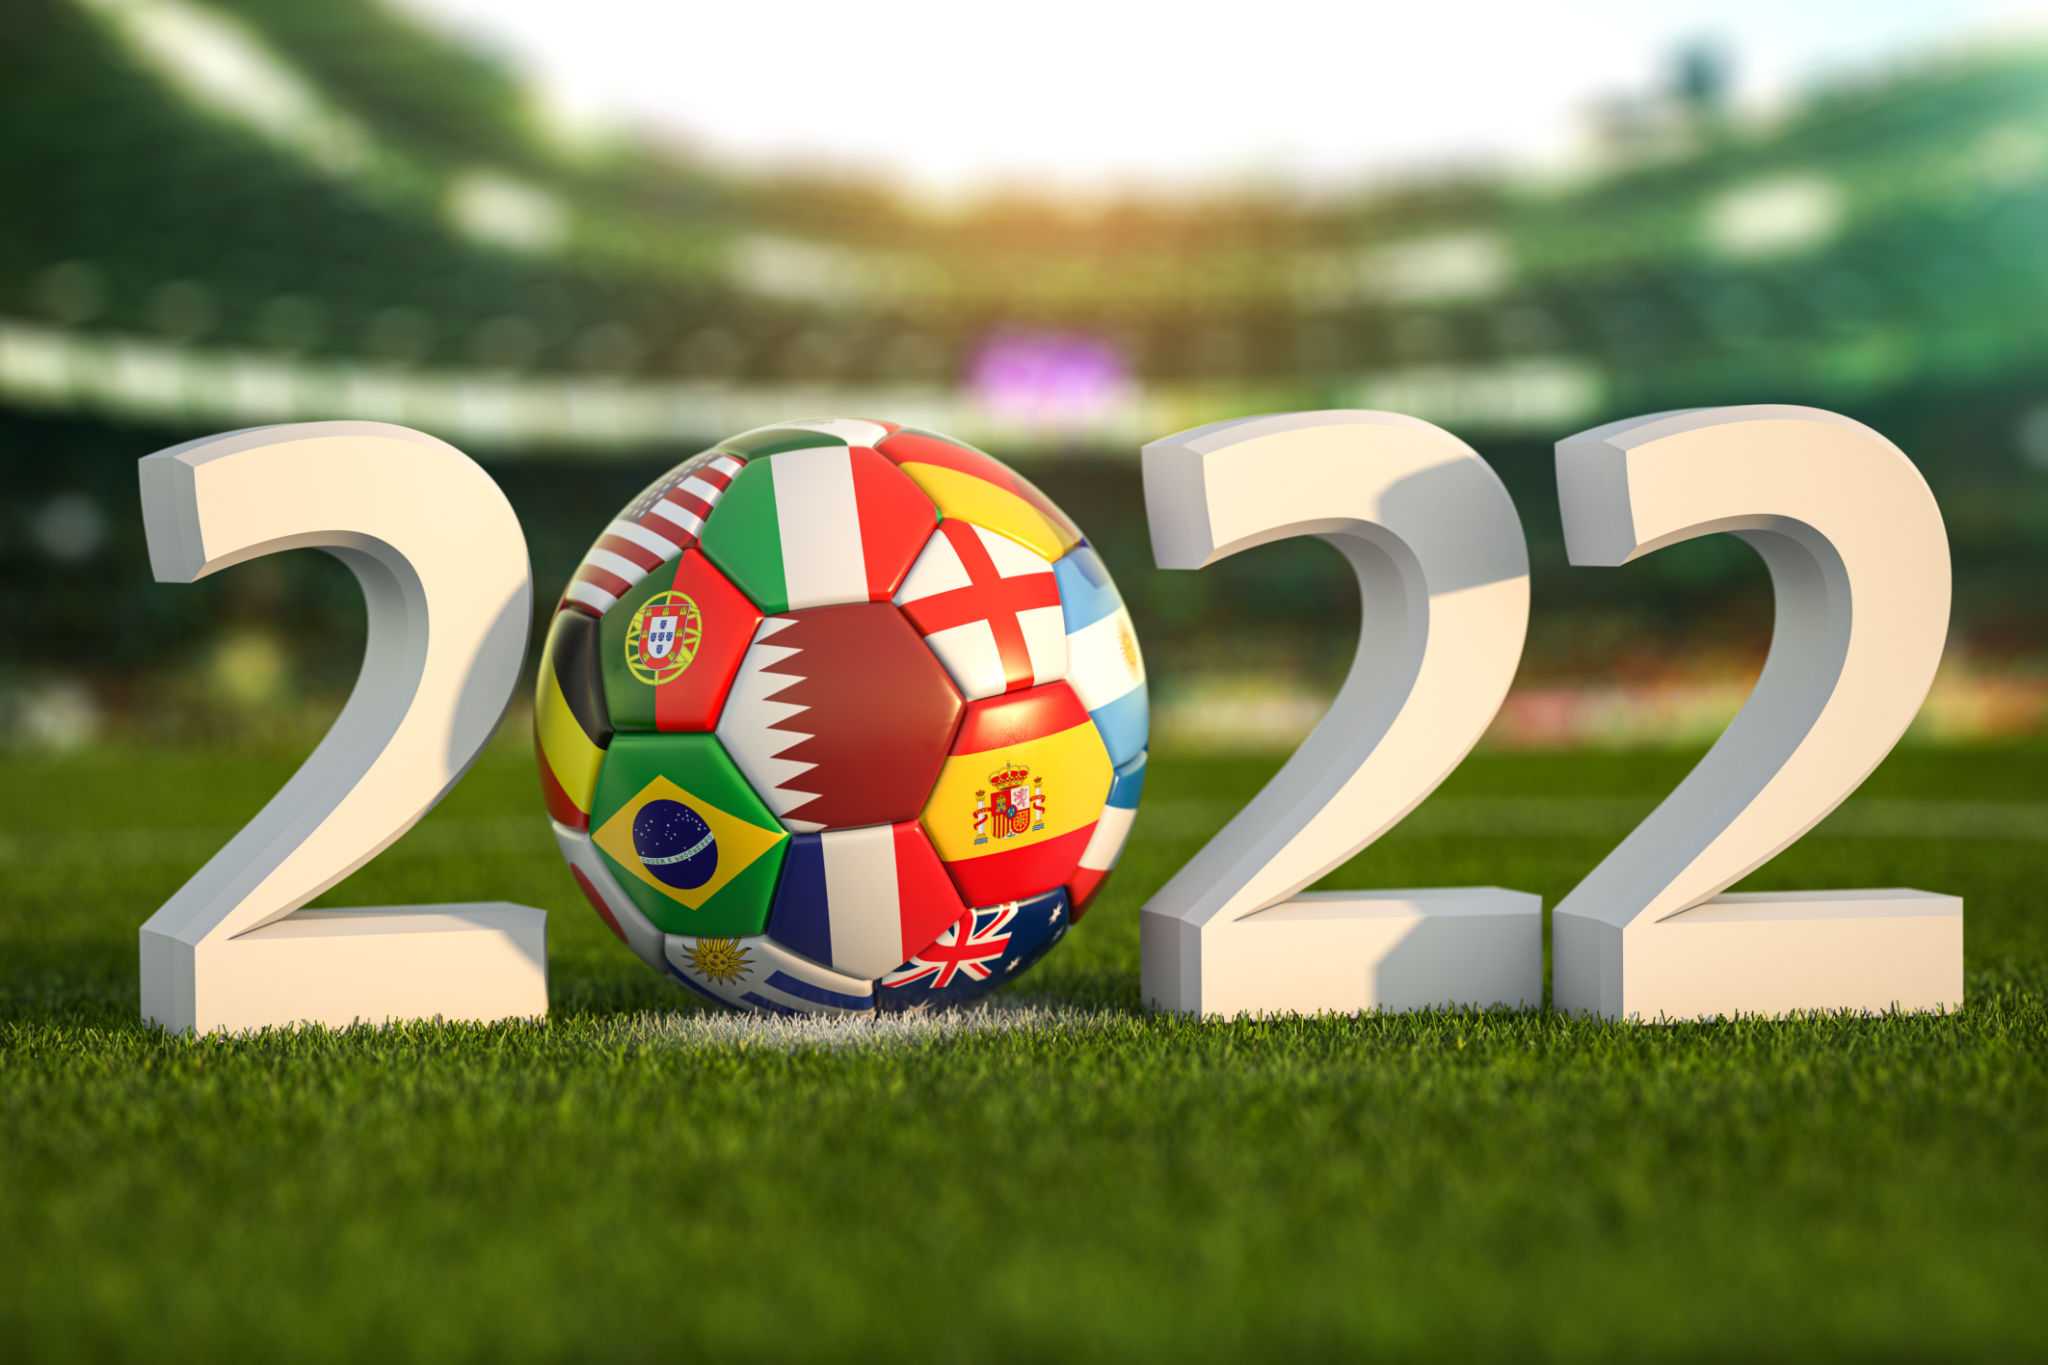 Чемпионат мира по футболу 2022